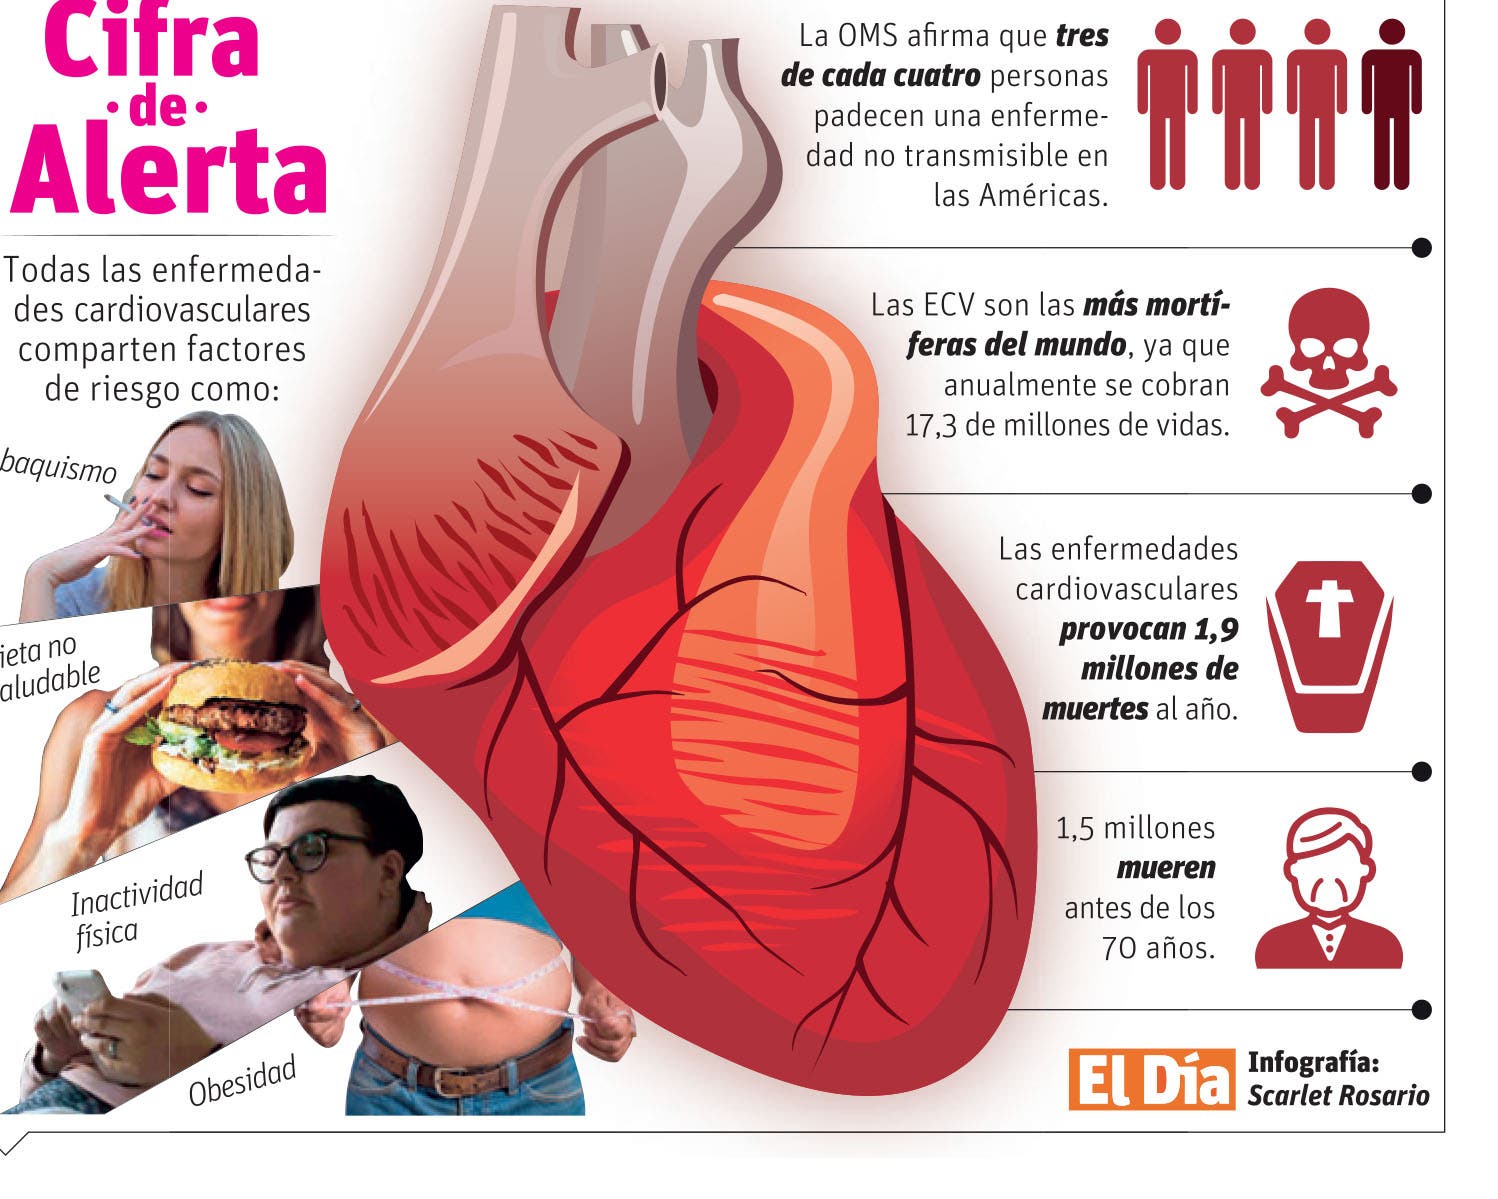 Enfermedades cardiovasculares son la principal causa de muerte prematura